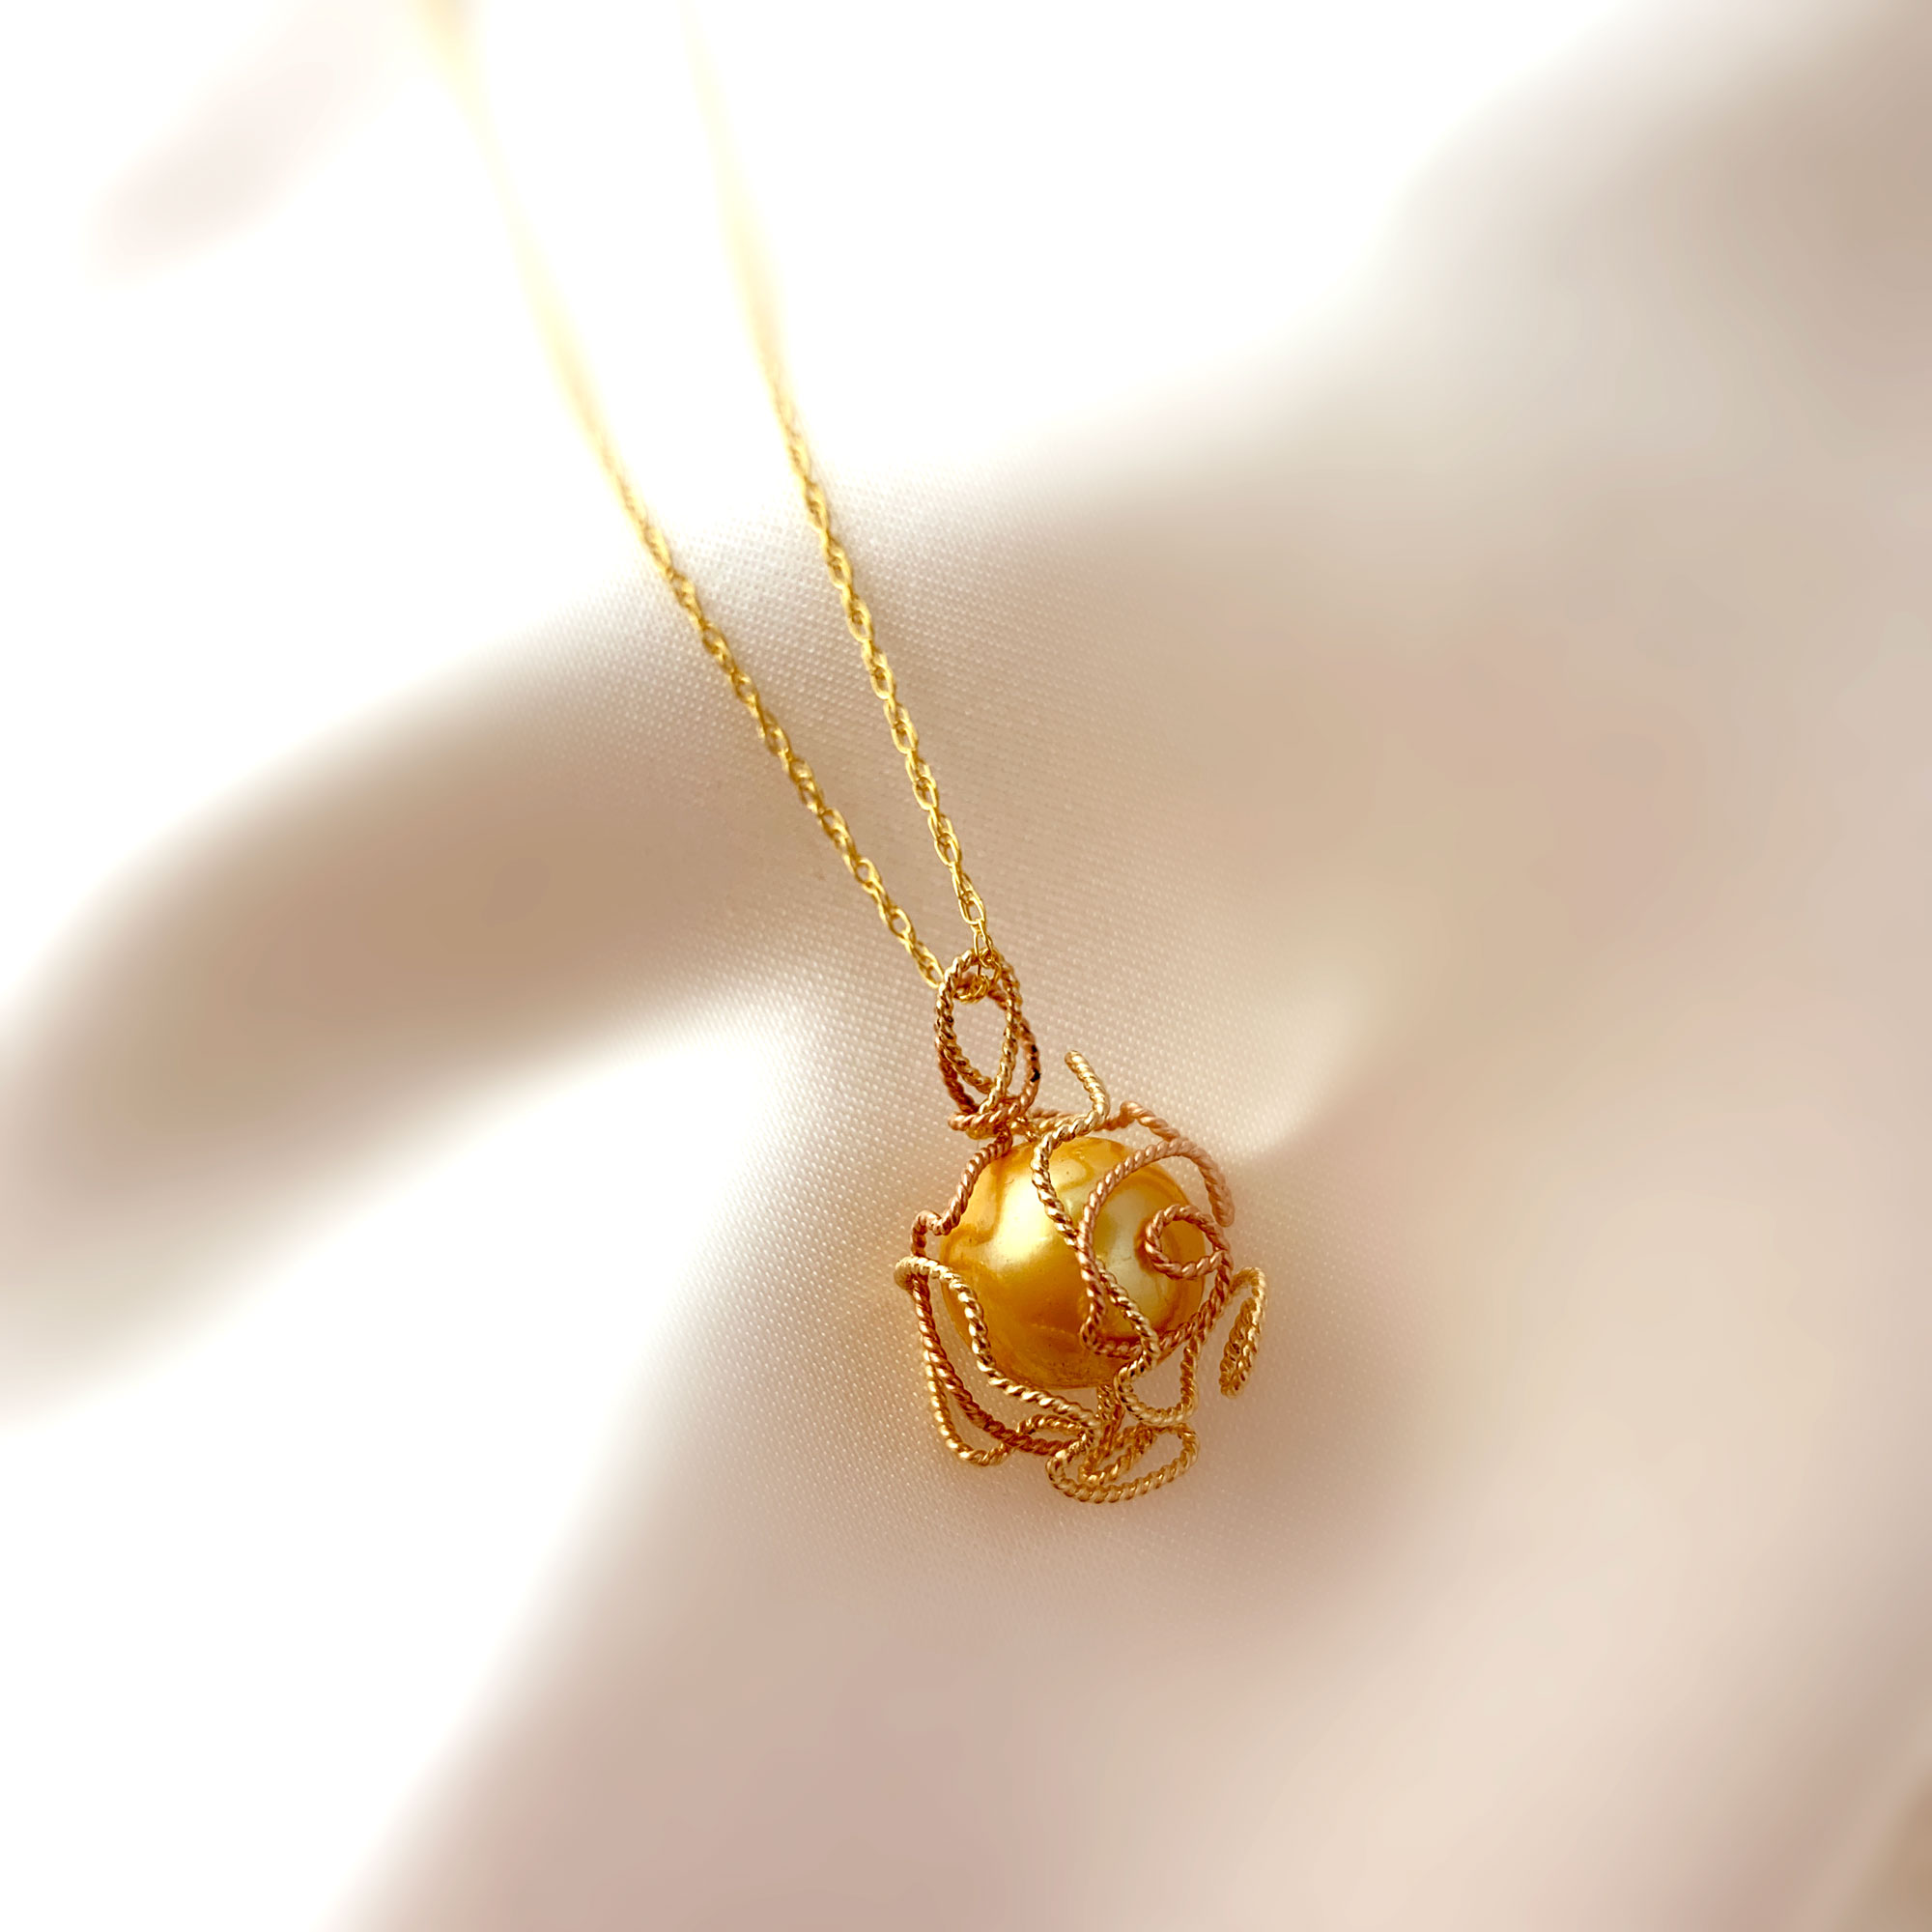 'Elegant' 'Golden Touch' Pendant Necklace